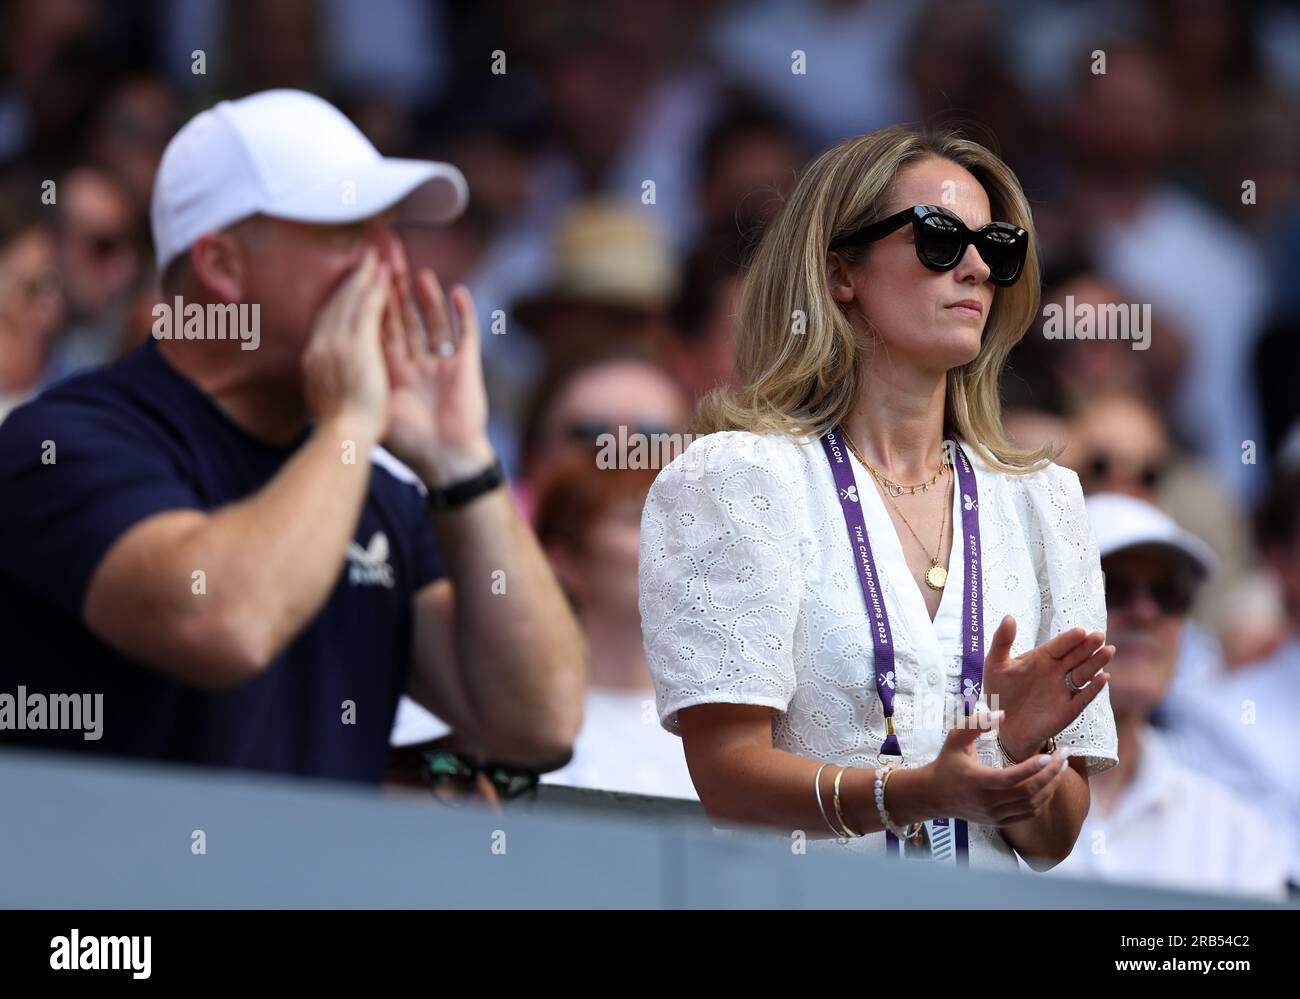 Kim Murray nel quinto giorno dei campionati di Wimbledon 2023 all'All England Lawn Tennis and Croquet Club di Wimbledon. Data immagine: Venerdì 7 luglio 2023. Foto Stock